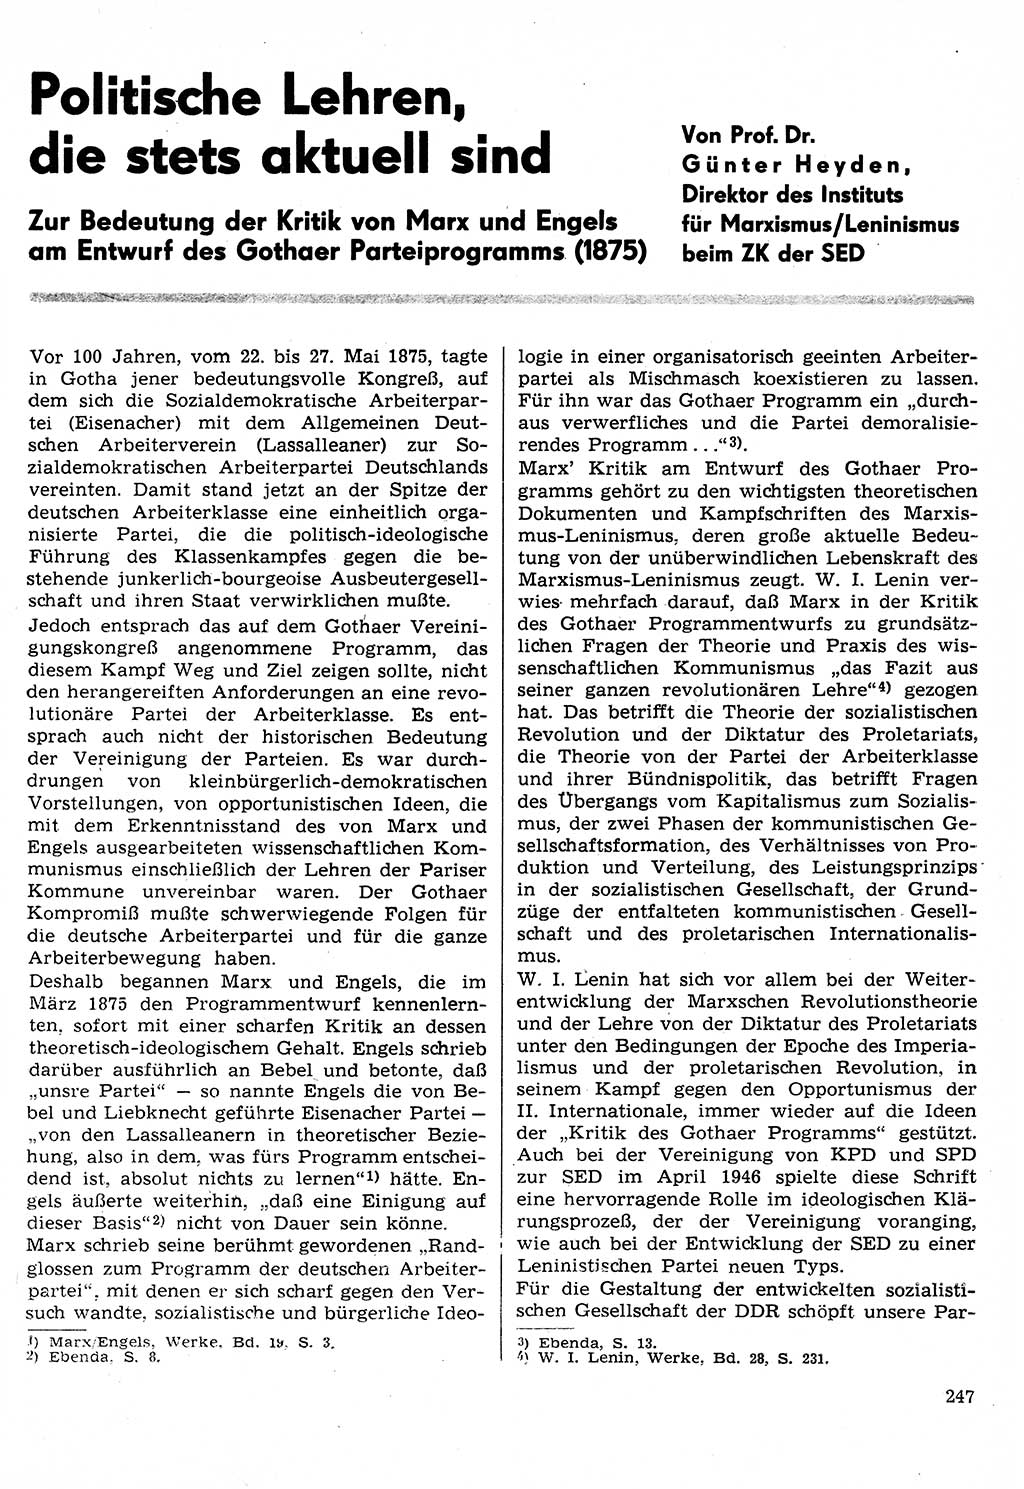 Neuer Weg (NW), Organ des Zentralkomitees (ZK) der SED (Sozialistische Einheitspartei Deutschlands) für Fragen des Parteilebens, 30. Jahrgang [Deutsche Demokratische Republik (DDR)] 1975, Seite 247 (NW ZK SED DDR 1975, S. 247)